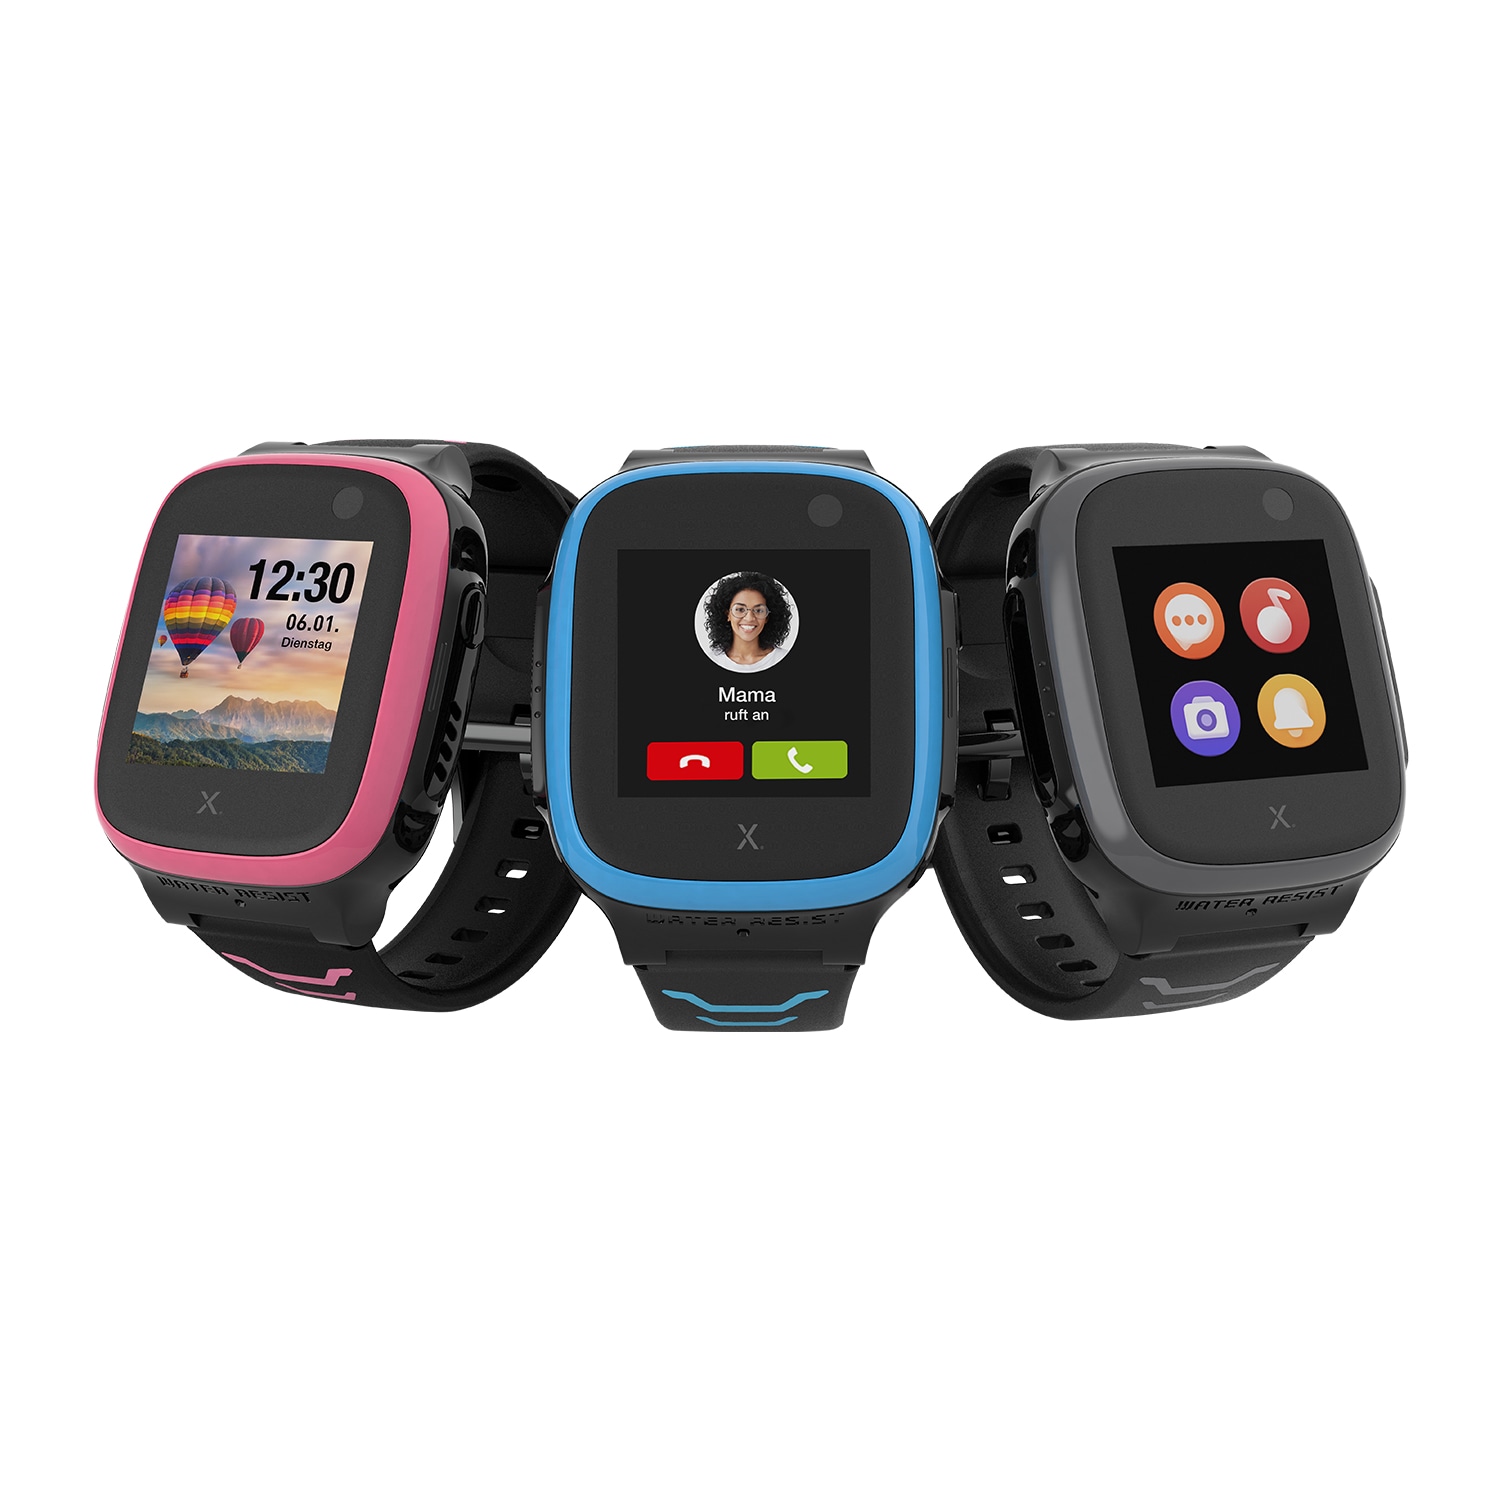 bestellen »X5 Raten Play Xplora Smartwatch eSim« auf